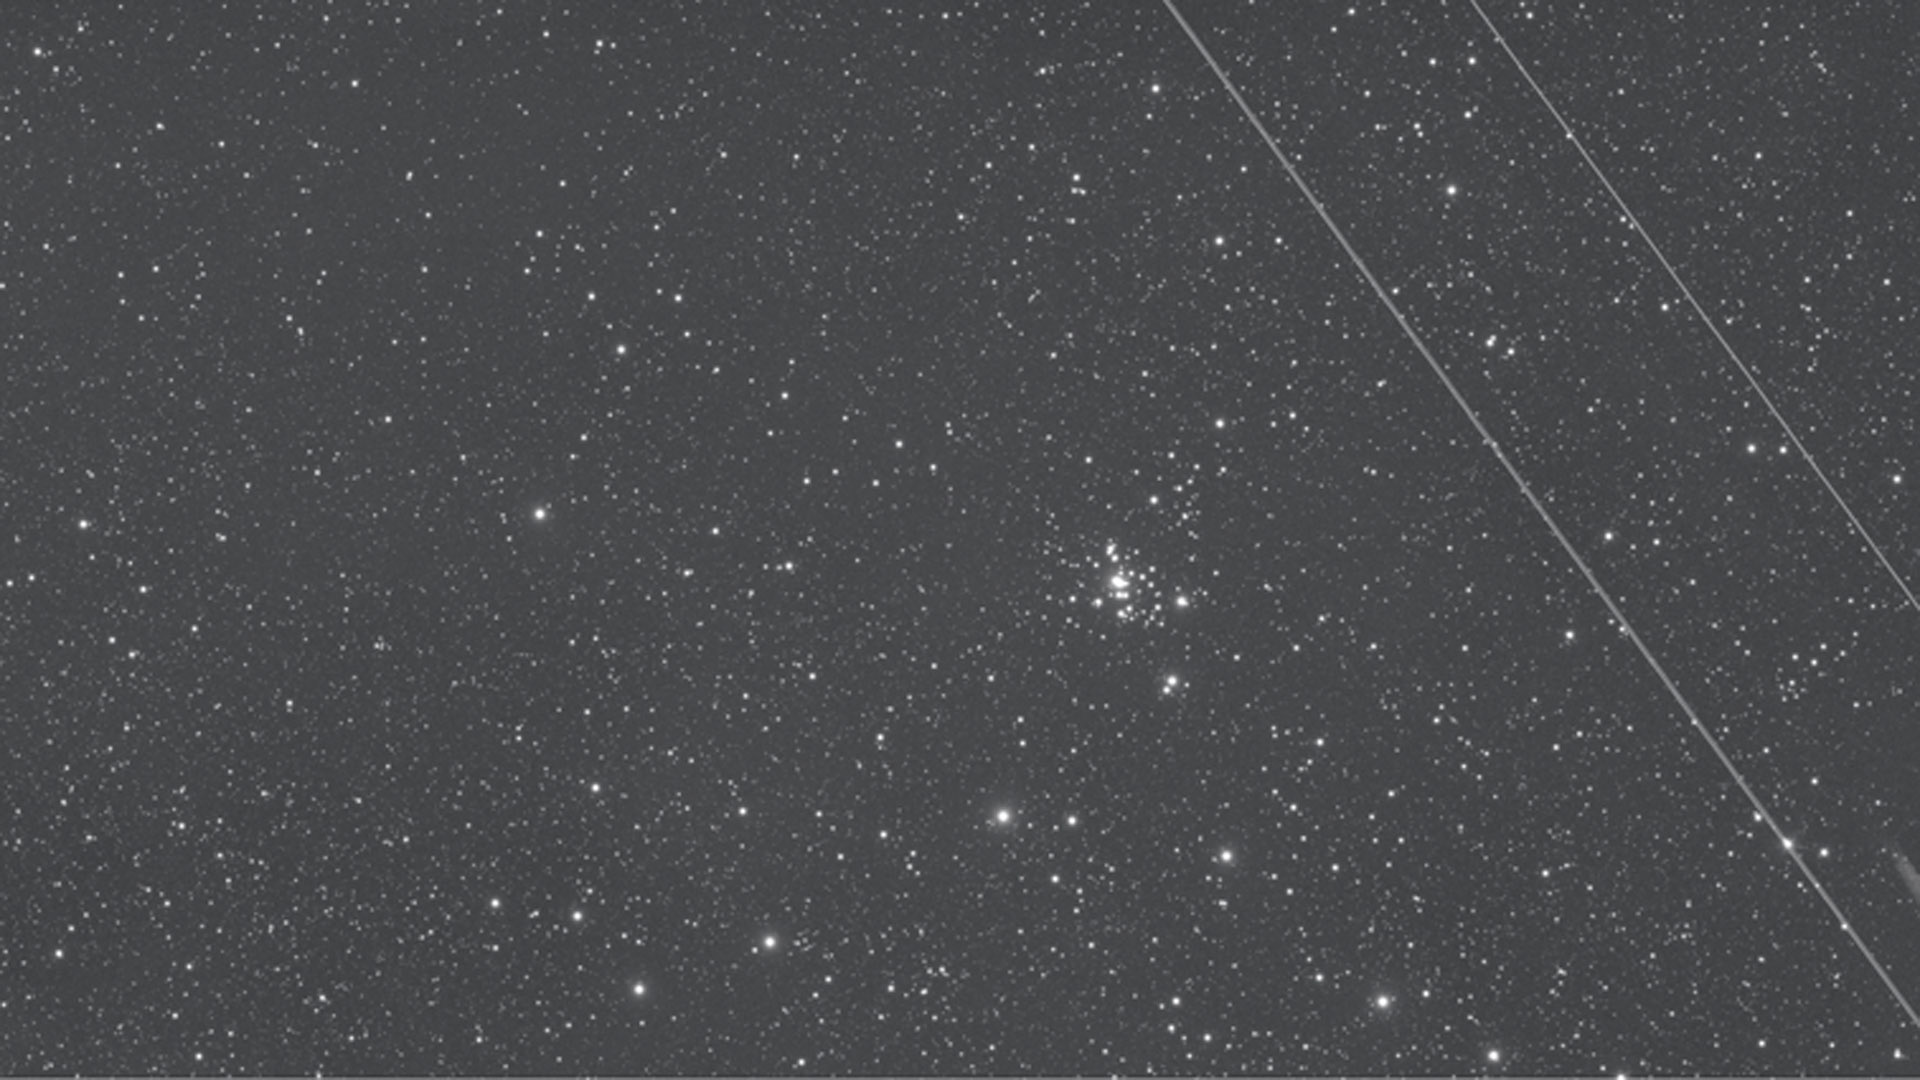 Que desagradável! Uma aeronave deslocou-se pelo campo de imagem durante esta exposição de 15 minutos do NGC 1501. Será que a imagem ainda é utilizável? M.Weigand